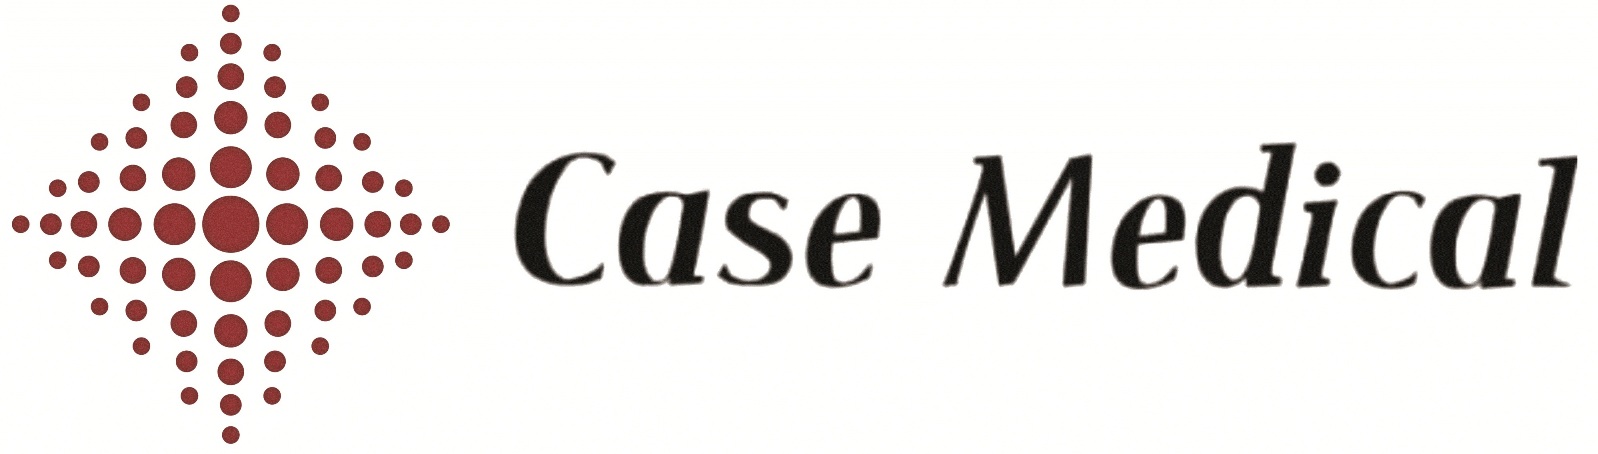 Case Medical logo